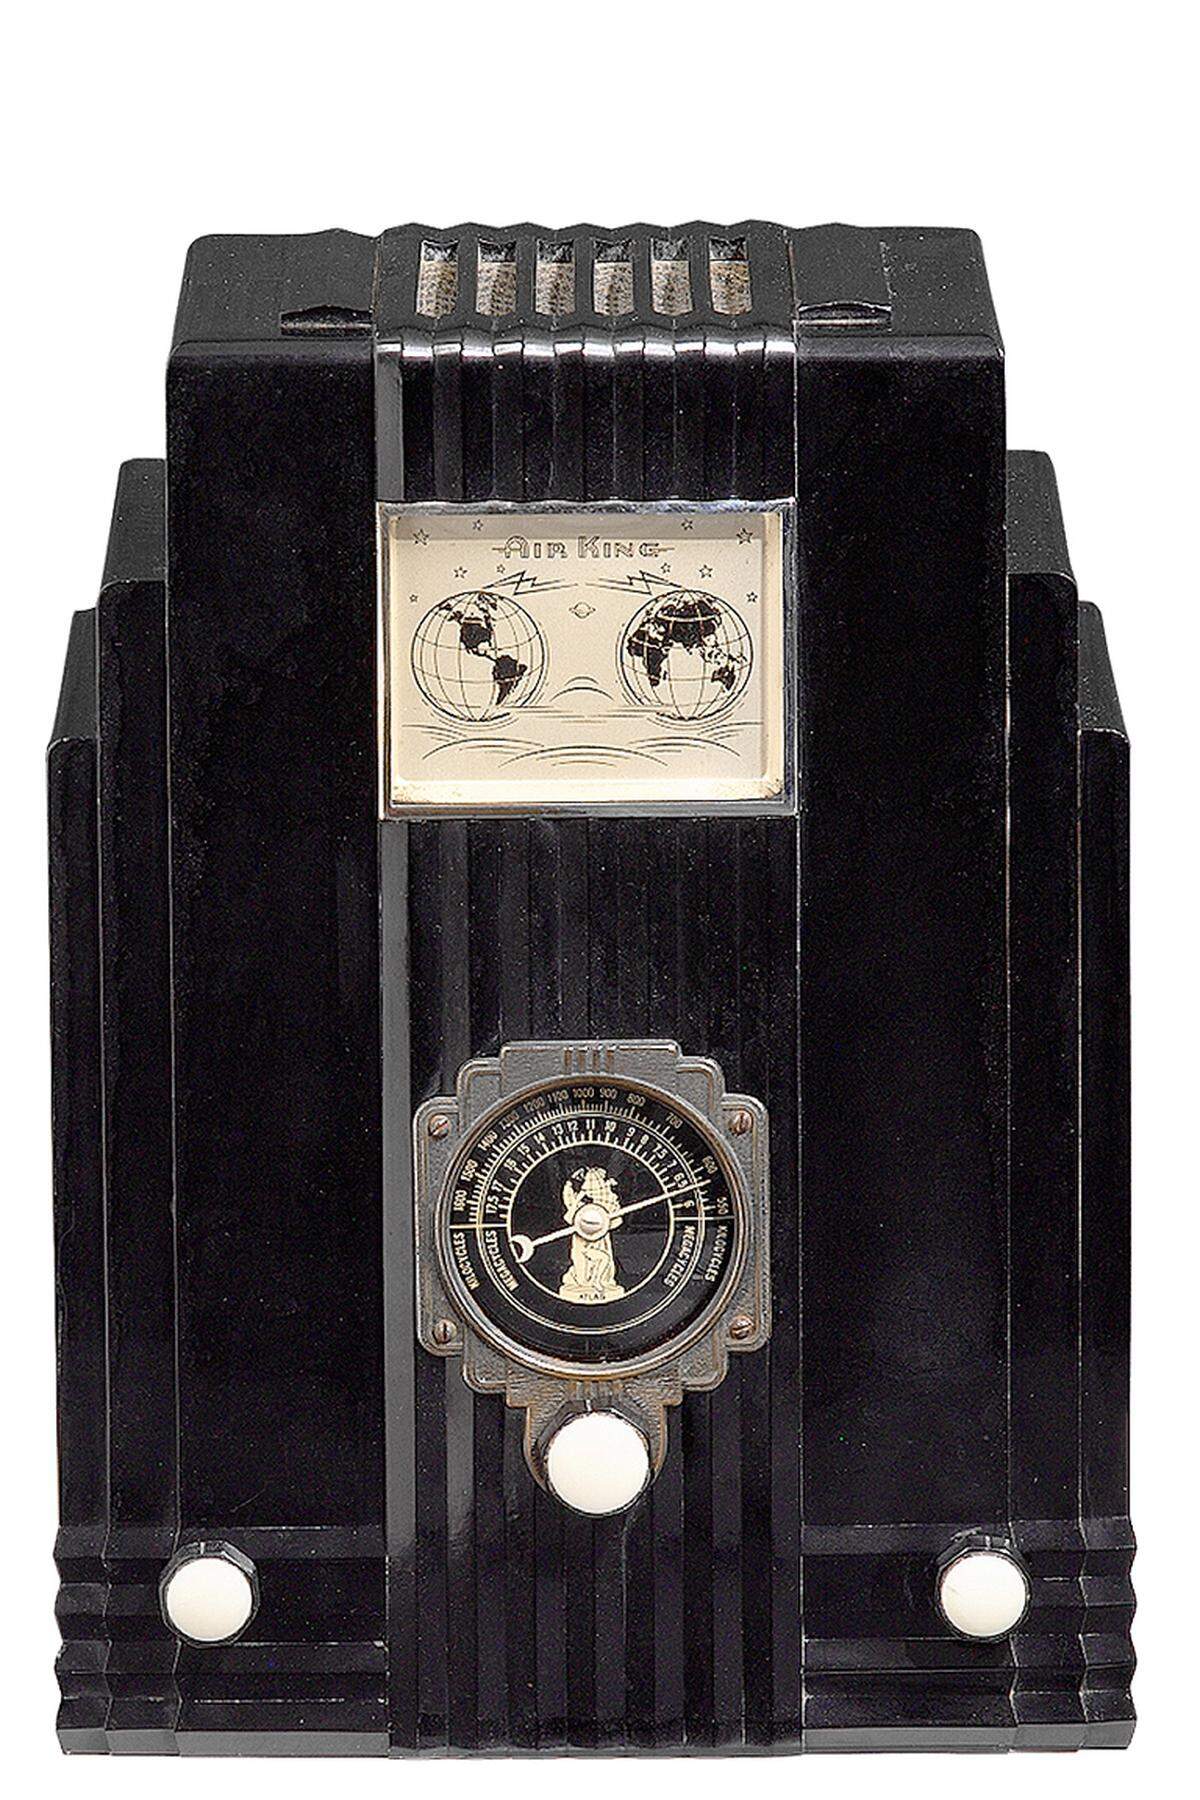 ... von Harold L. van Doren, New York 1935 (aus der Ausstellung „Radio Zeit“).